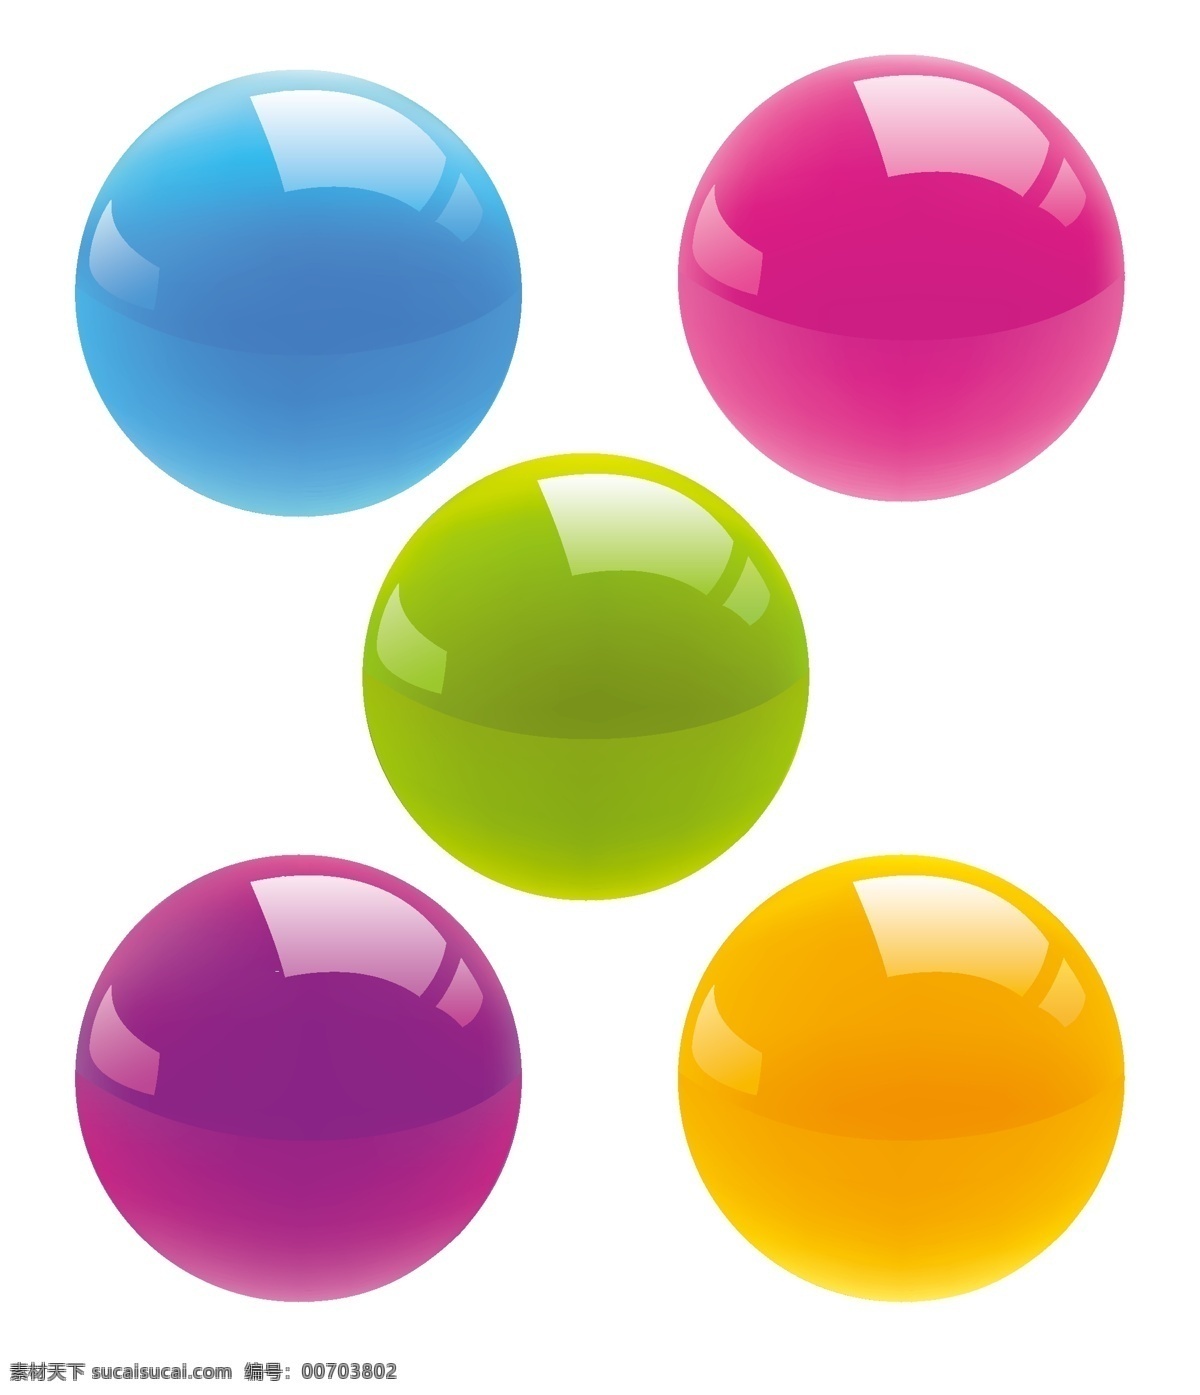 水晶球 水晶按钮 红色 绿色 黄色 紫色 圆圈 圆球 logo设计